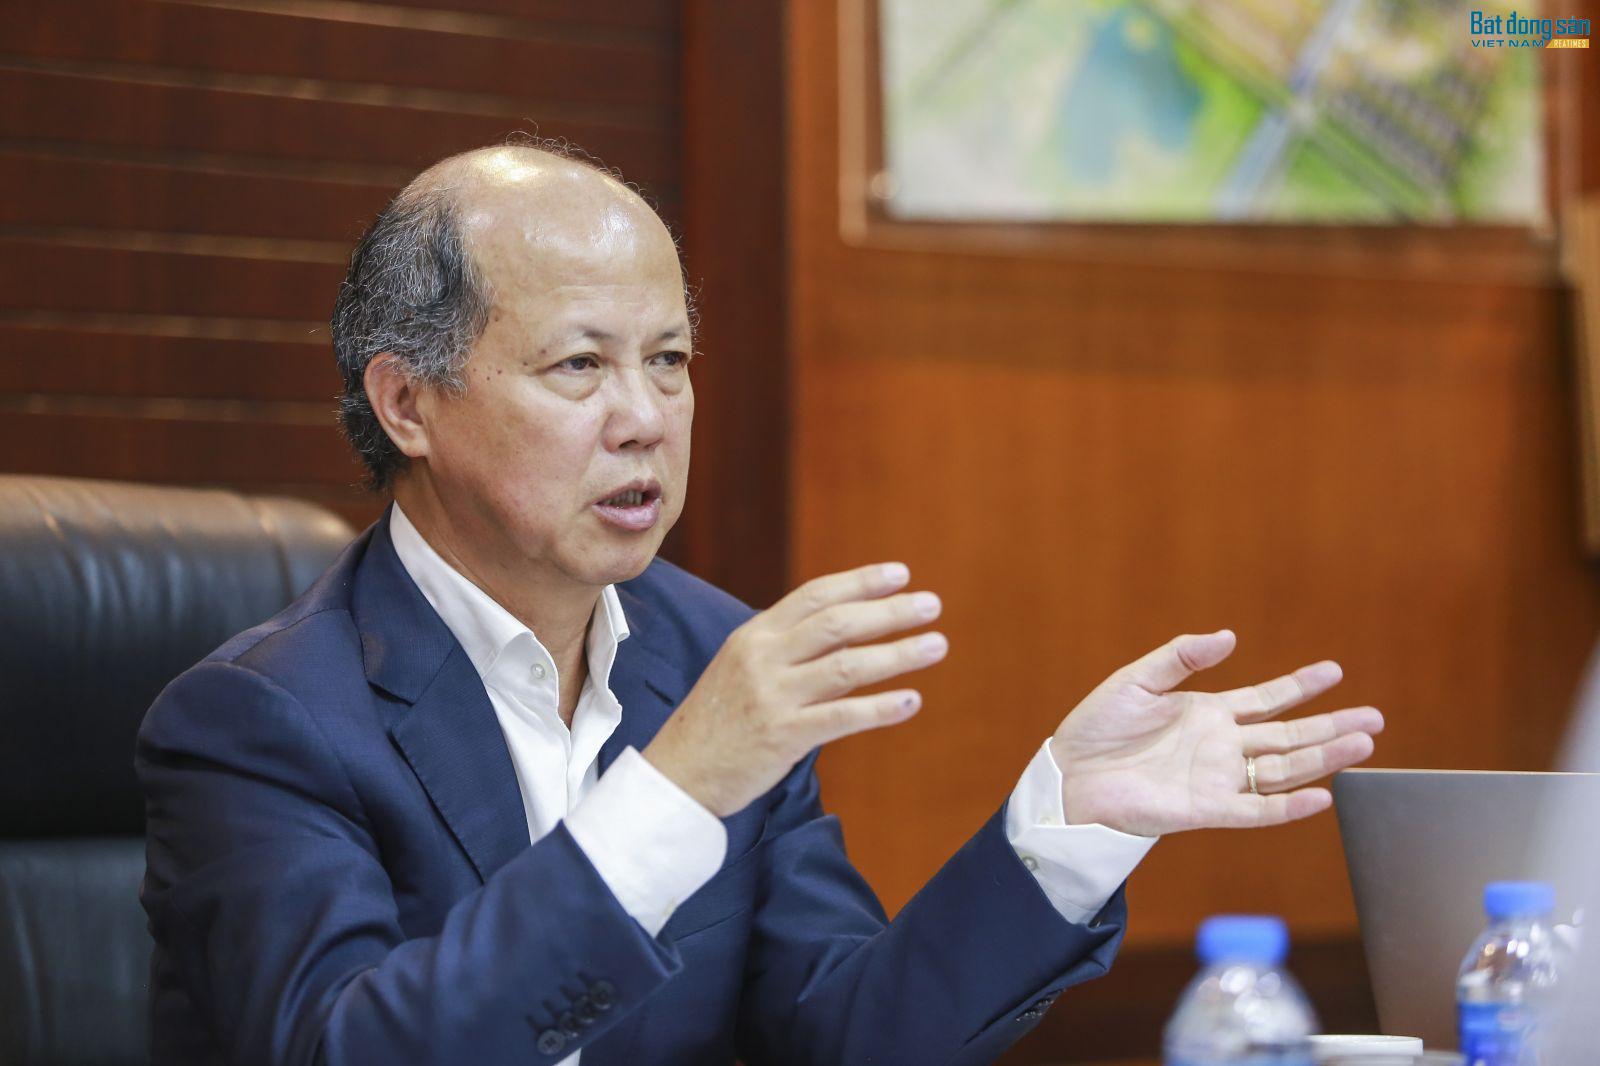 Ông Nguyễn Trần Nam, Chủ tịch Hiệp hội Bất động sản Việt Nam - nguyên Thứ trưởng Bộ xây dựng, Chủ tịch IREC 2018